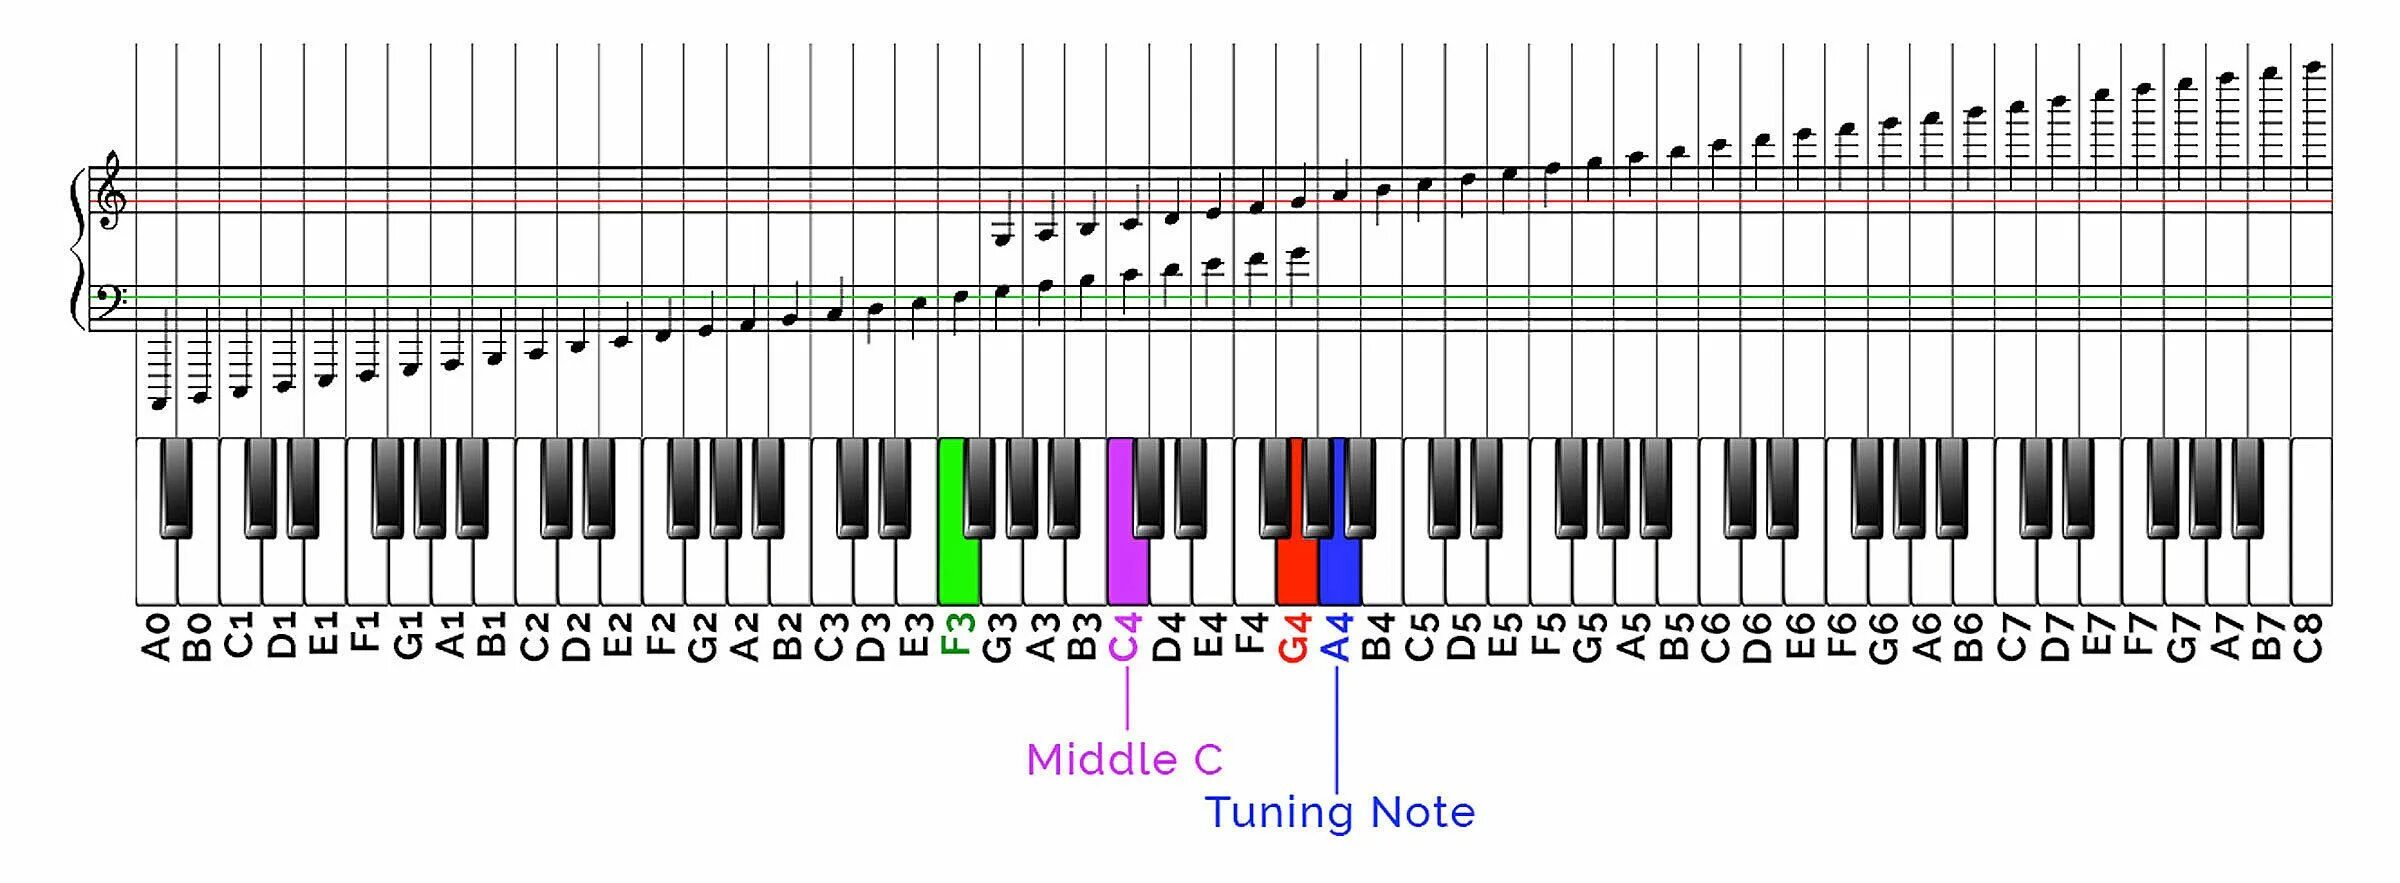 Show notes. Нота g 6 пианино. Расположение октав на синтезаторе 61 клавиша. Октавы на синтезаторе 61 клавиша. Пианино с нотами g4.